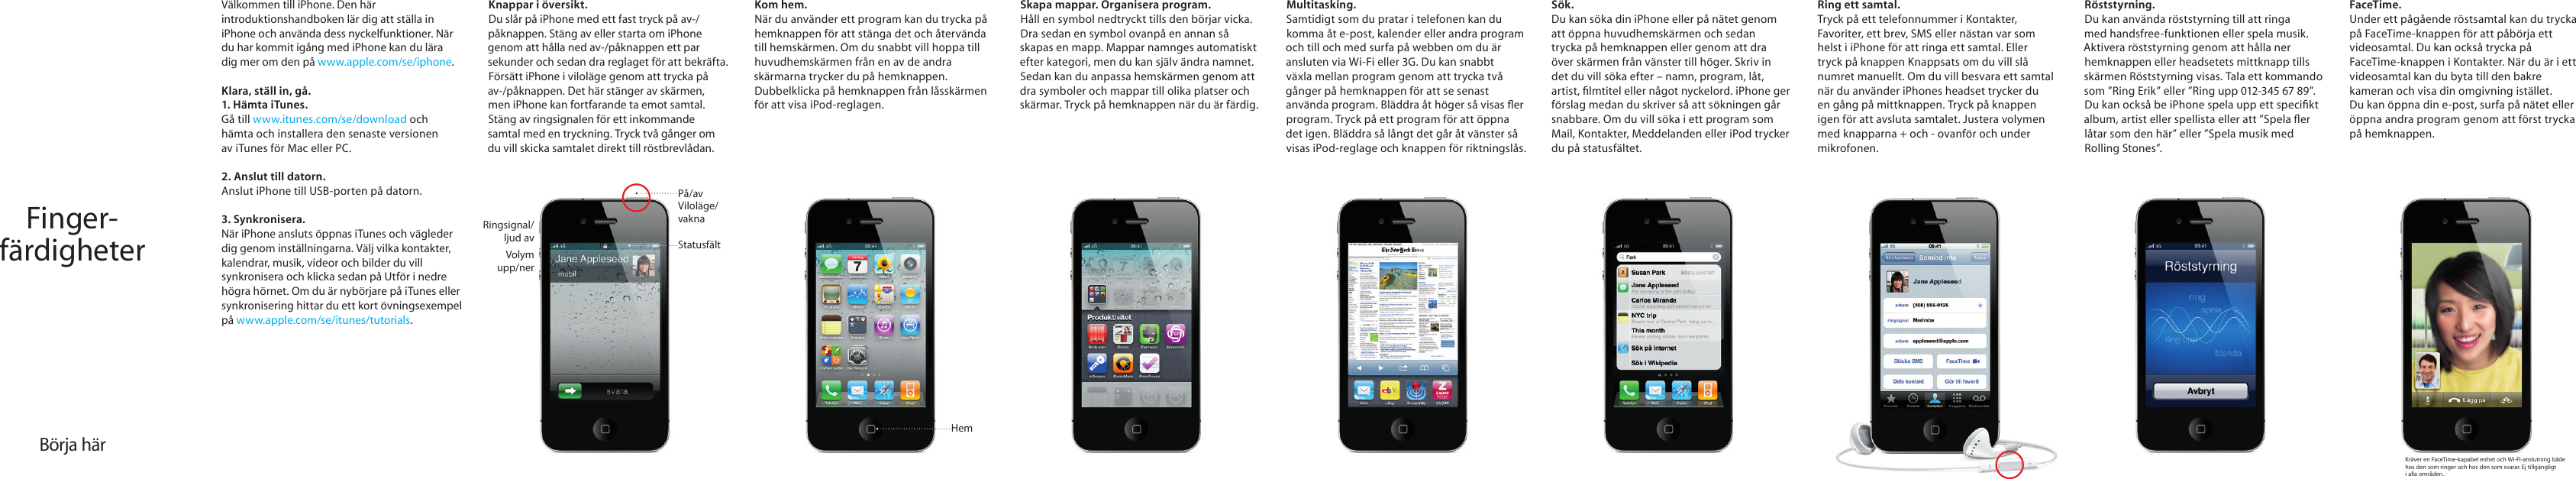 Page 1 of 2 - Apple IPhone 4 User Manual I Phone - Fingerfärdigheter Fingerfardigheter